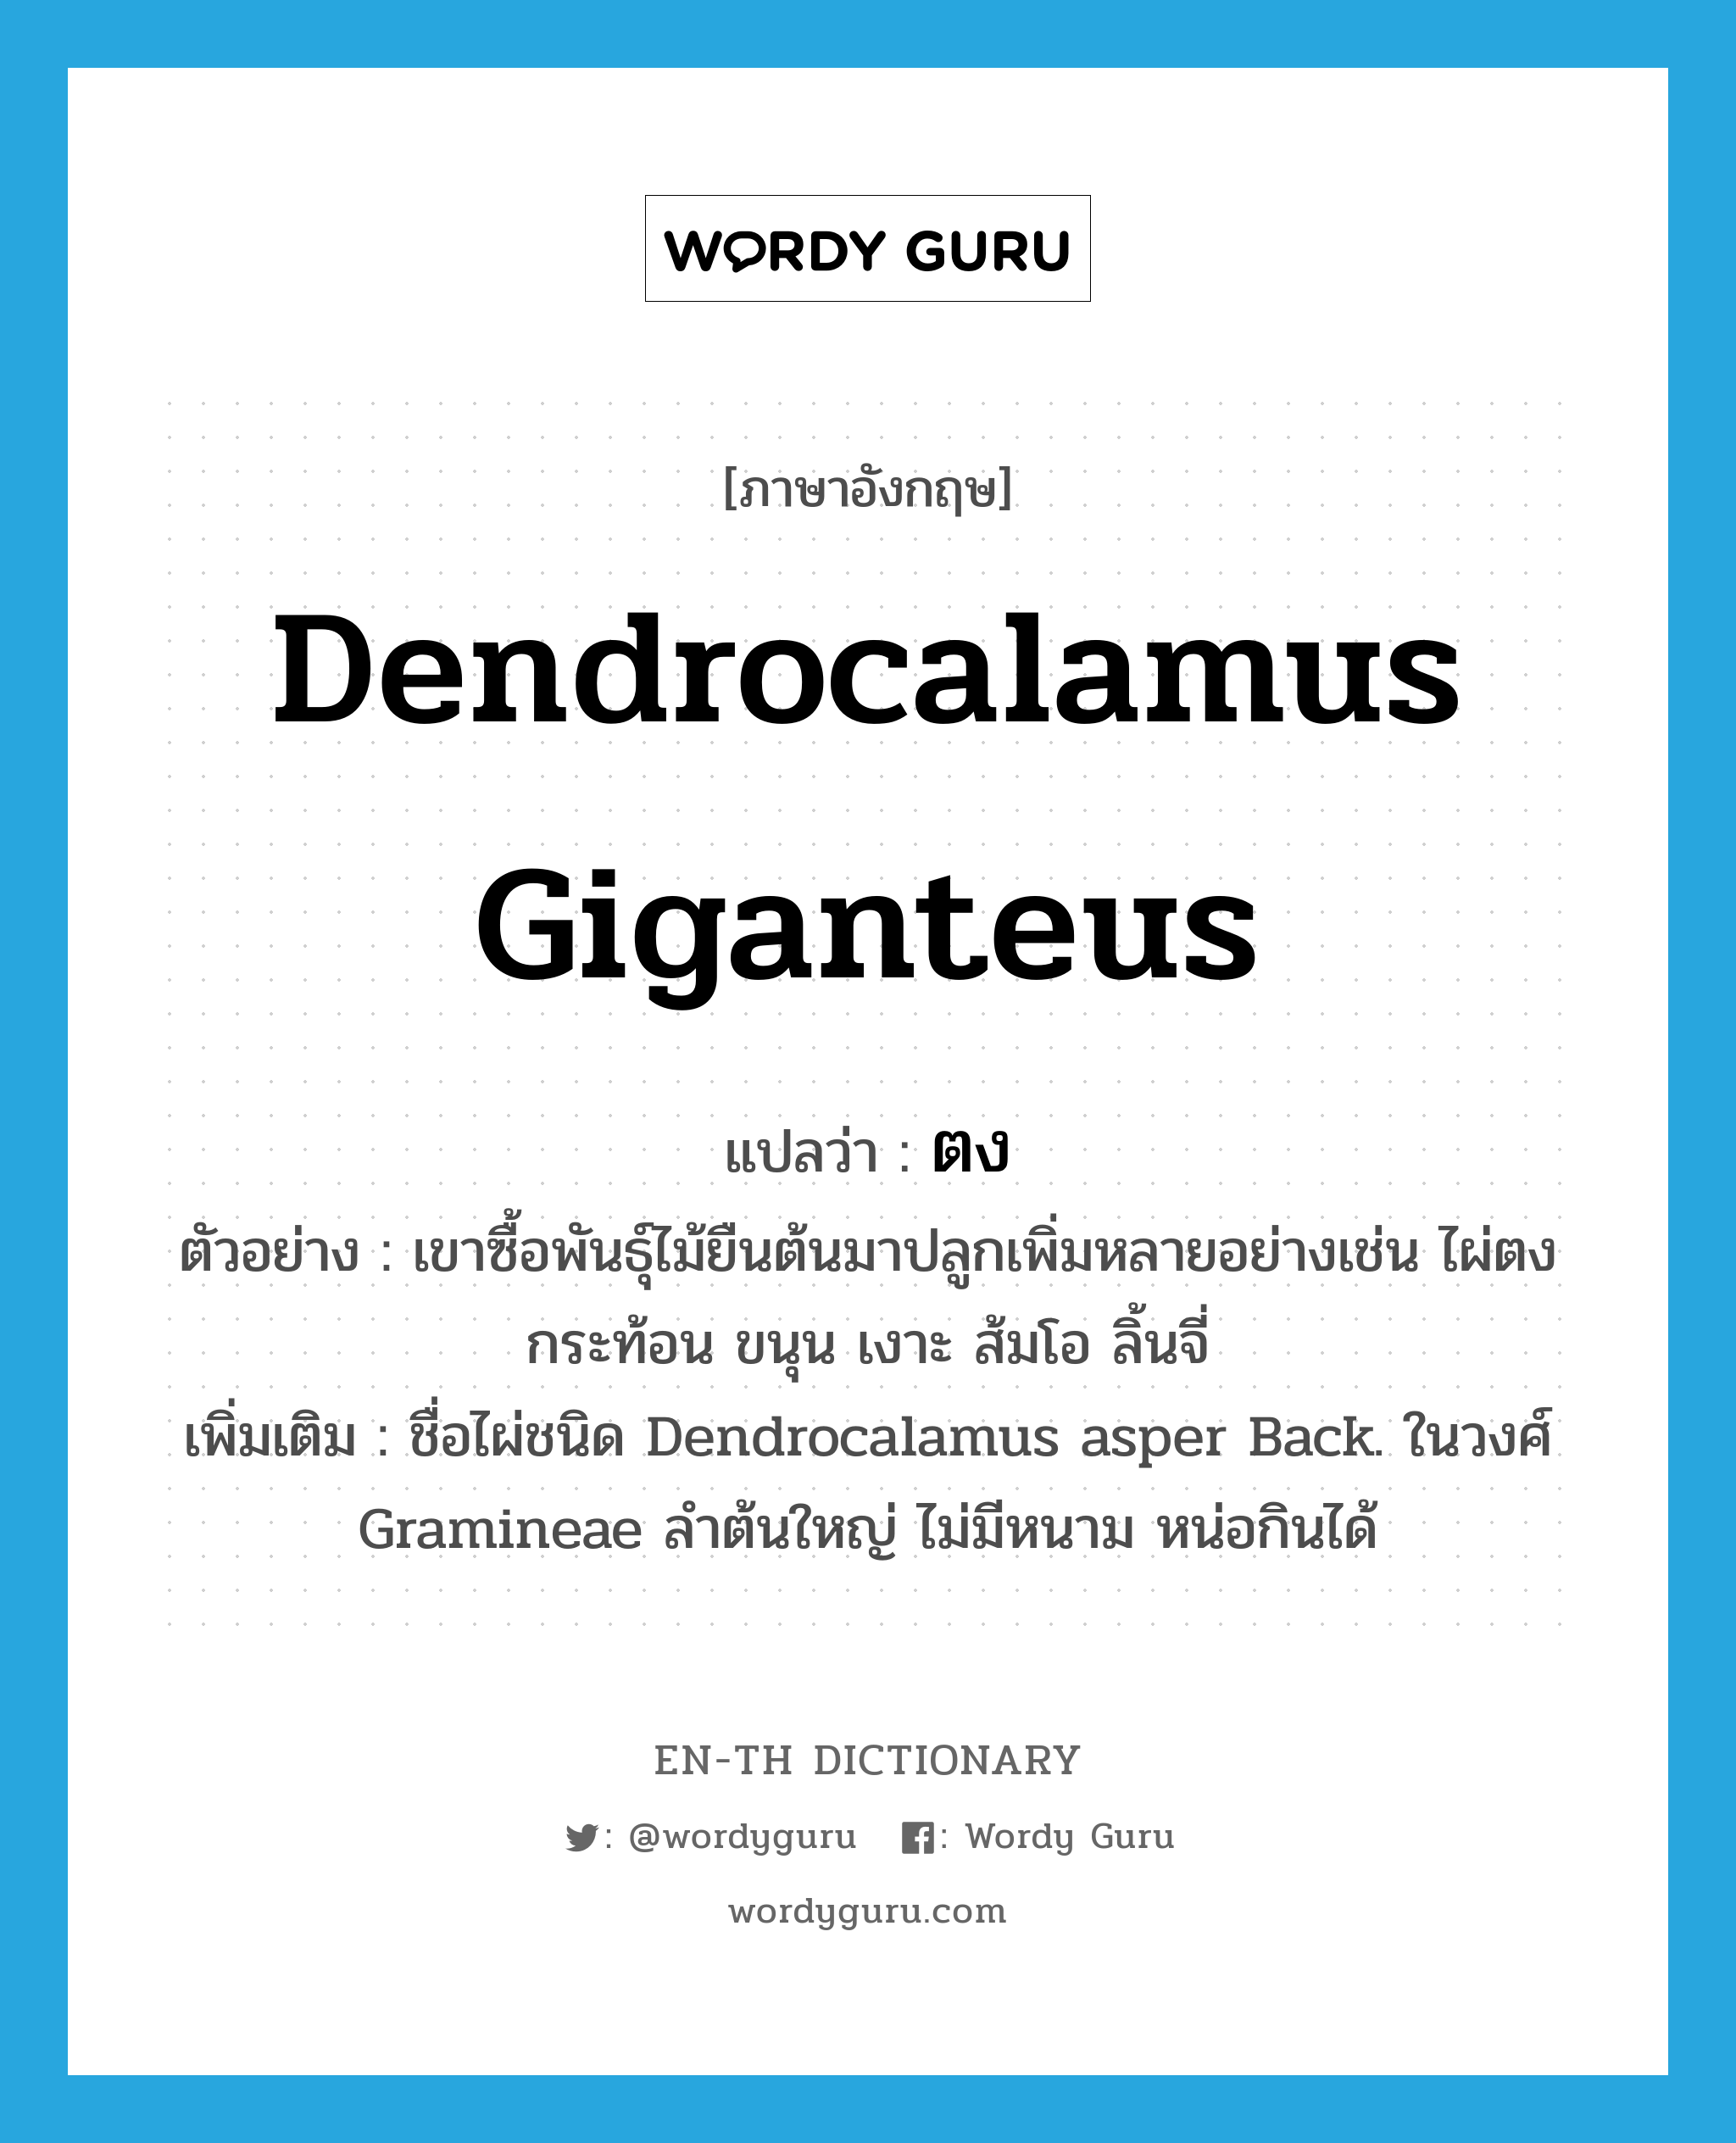 ตง ภาษาอังกฤษ?, คำศัพท์ภาษาอังกฤษ ตง แปลว่า Dendrocalamus giganteus ประเภท N ตัวอย่าง เขาซื้อพันธุ์ไม้ยืนต้นมาปลูกเพิ่มหลายอย่างเช่น ไผ่ตง กระท้อน ขนุน เงาะ ส้มโอ ลิ้นจี่ เพิ่มเติม ชื่อไผ่ชนิด Dendrocalamus asper Back. ในวงศ์ Gramineae ลำต้นใหญ่ ไม่มีหนาม หน่อกินได้ หมวด N